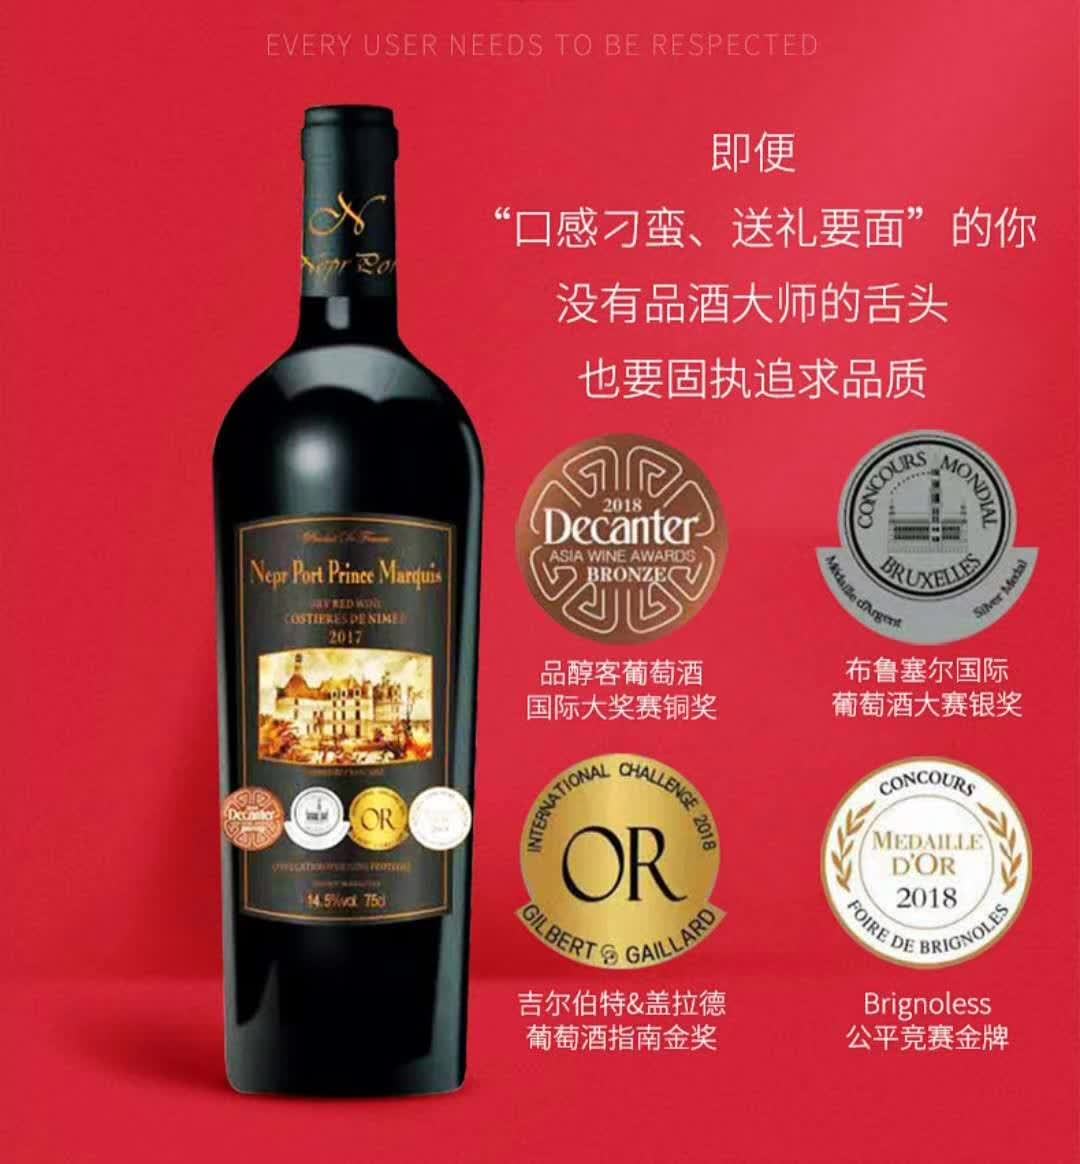 上海万耀诺波特系列王爵干红葡萄酒现货供应法国进口罗纳河谷地区1200g重型瓶葡萄酒进口酒水货源